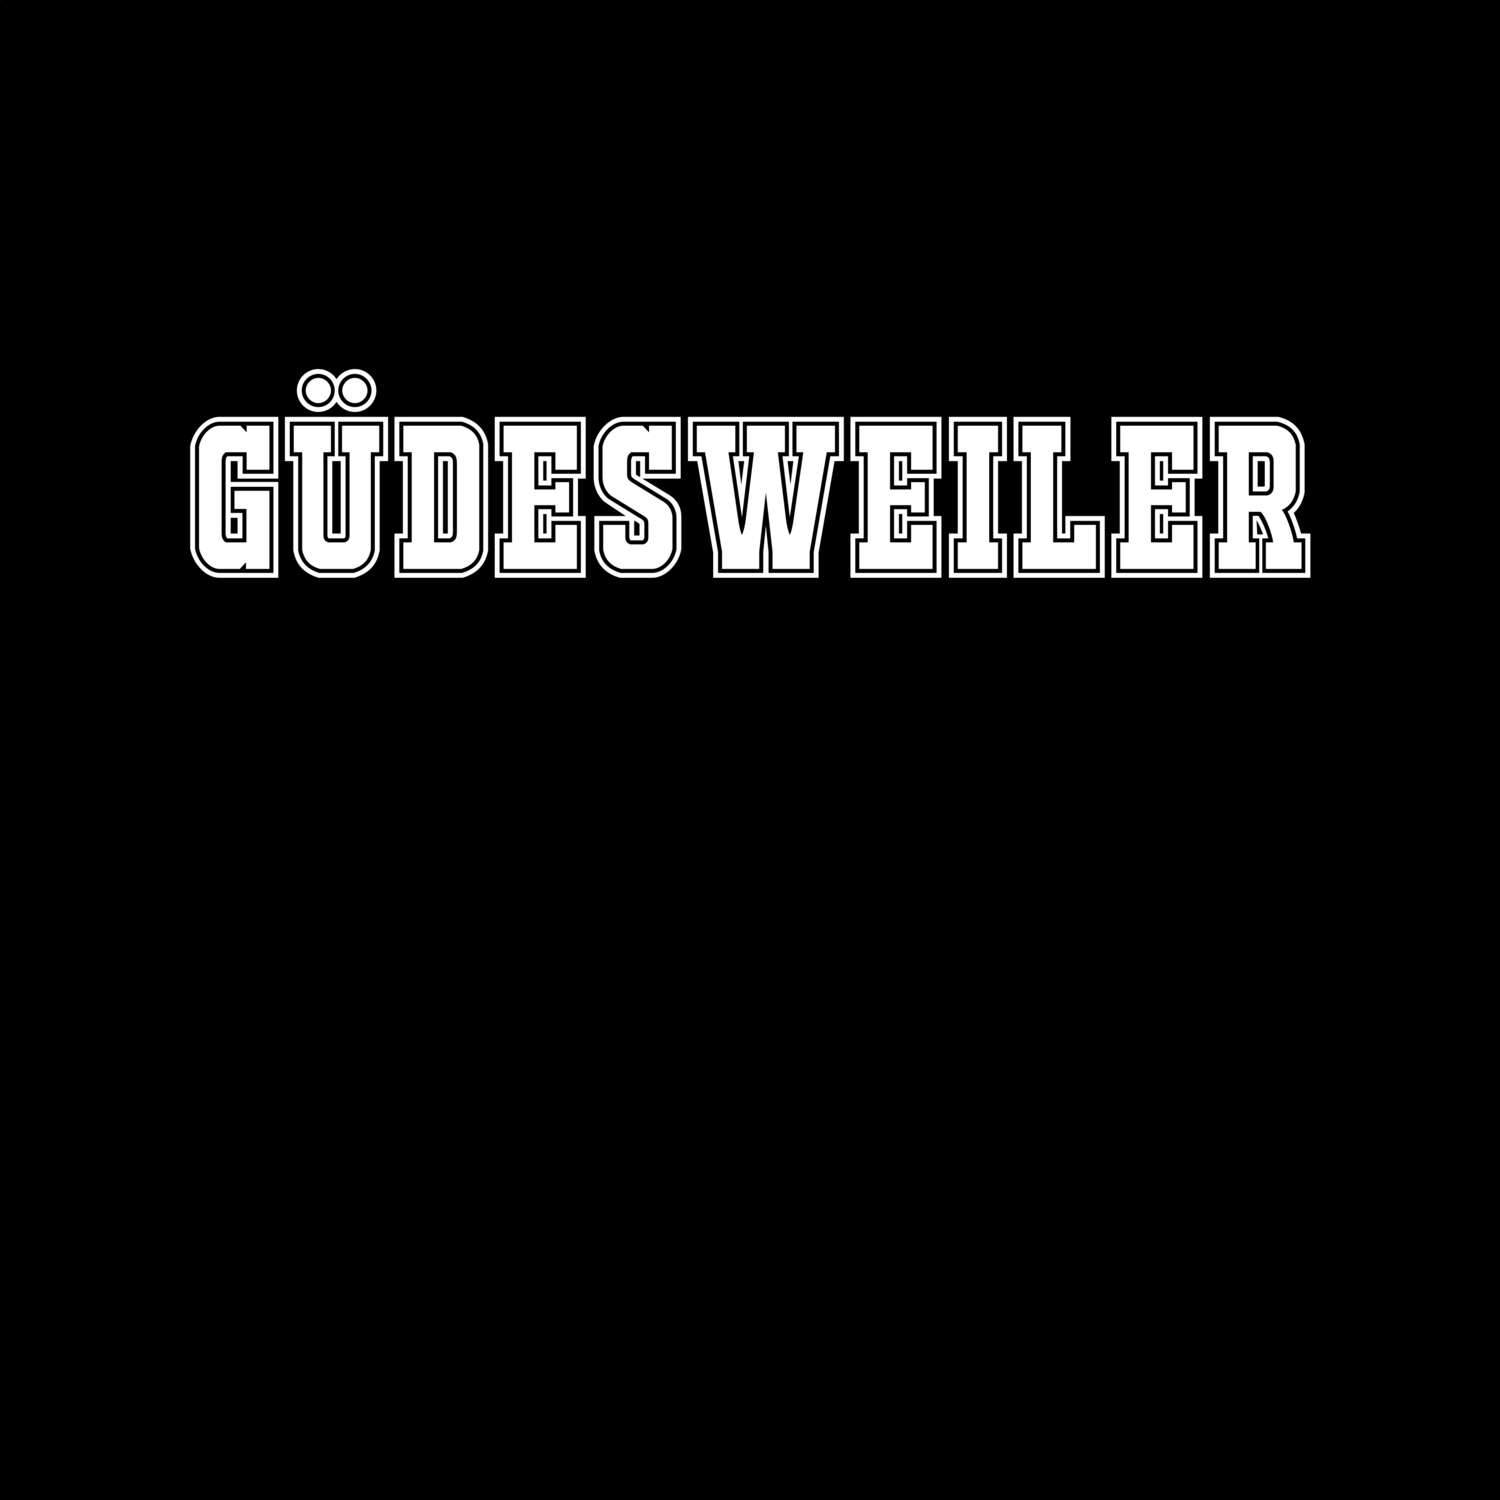 Güdesweiler T-Shirt »Classic«